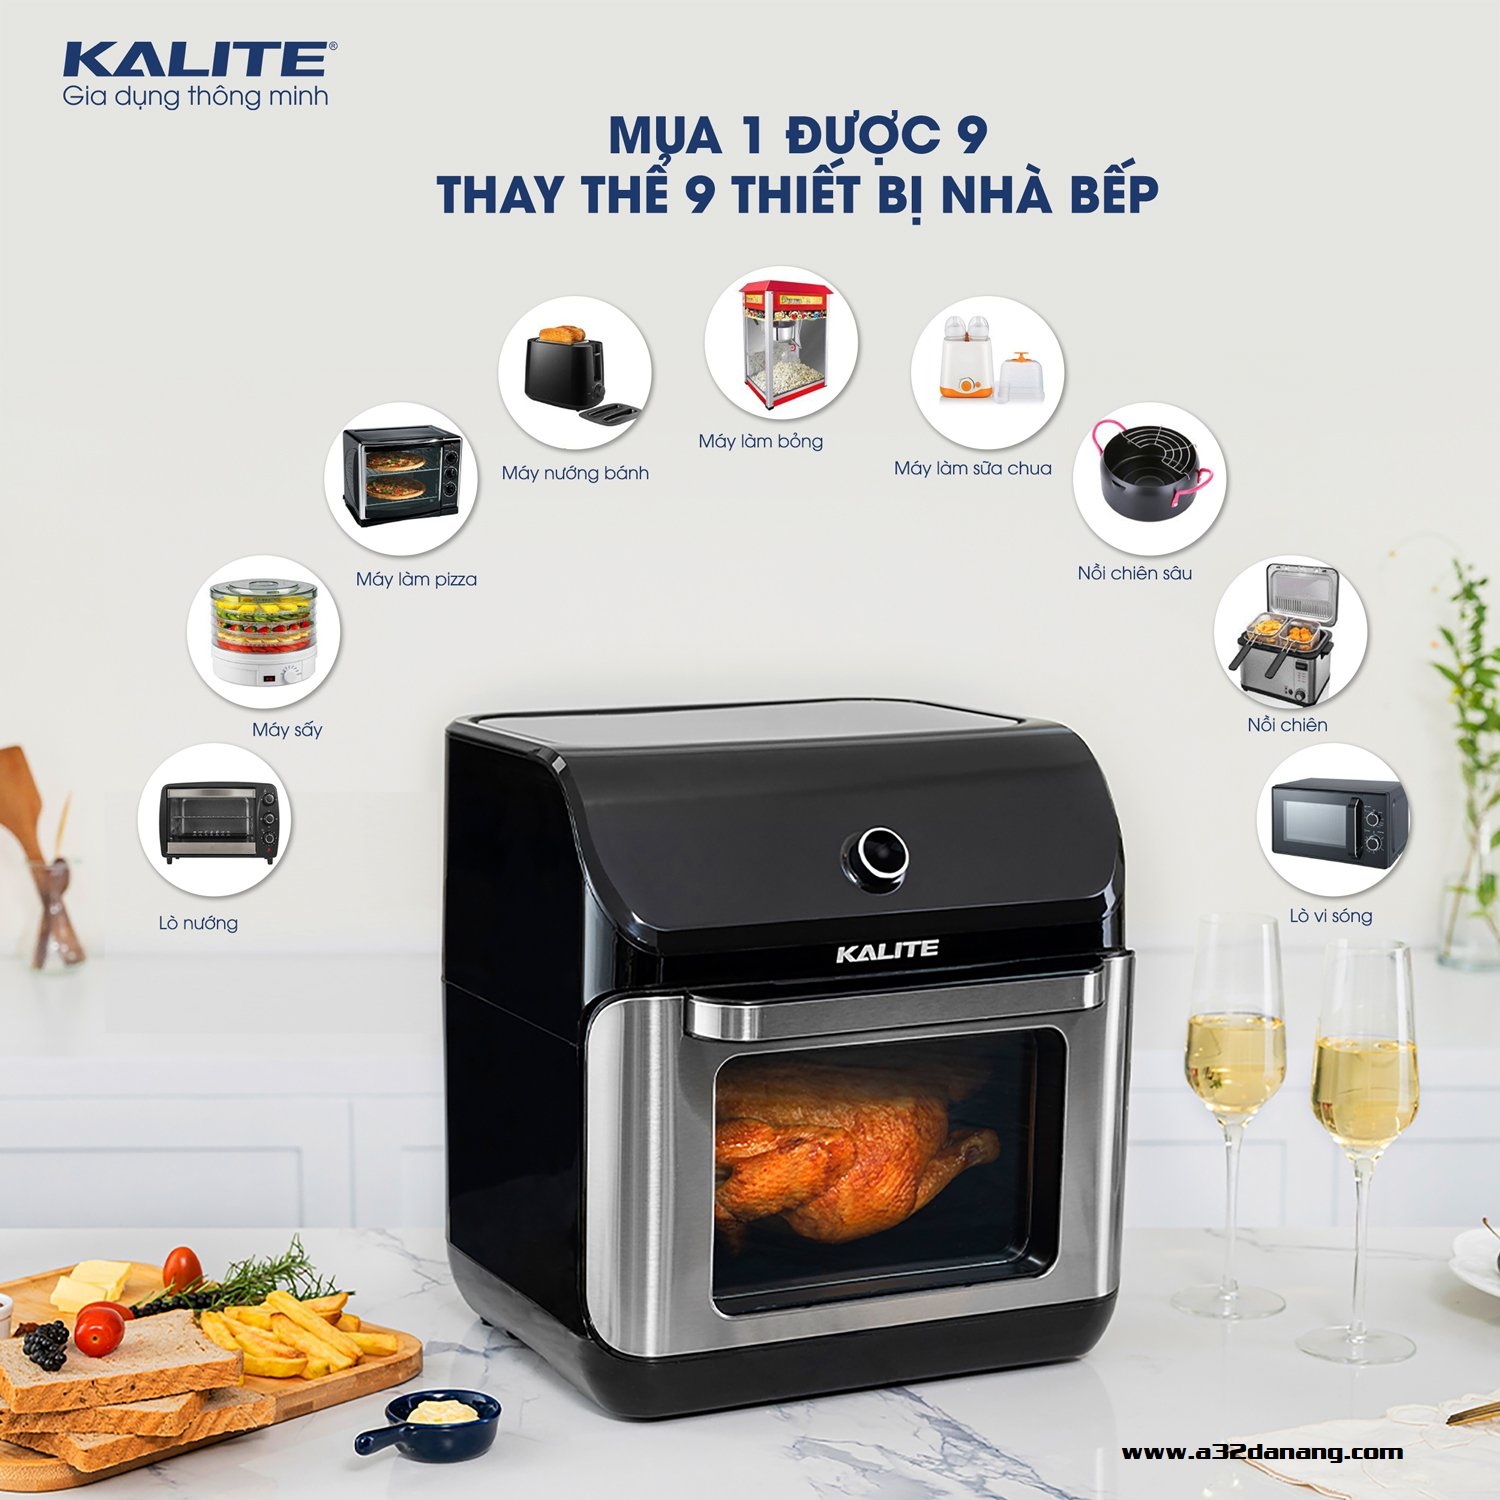 Nồi chiên không dầu Kalite KL-1200 thay thế 9 loại thiết bị nhà bếp khác nhau